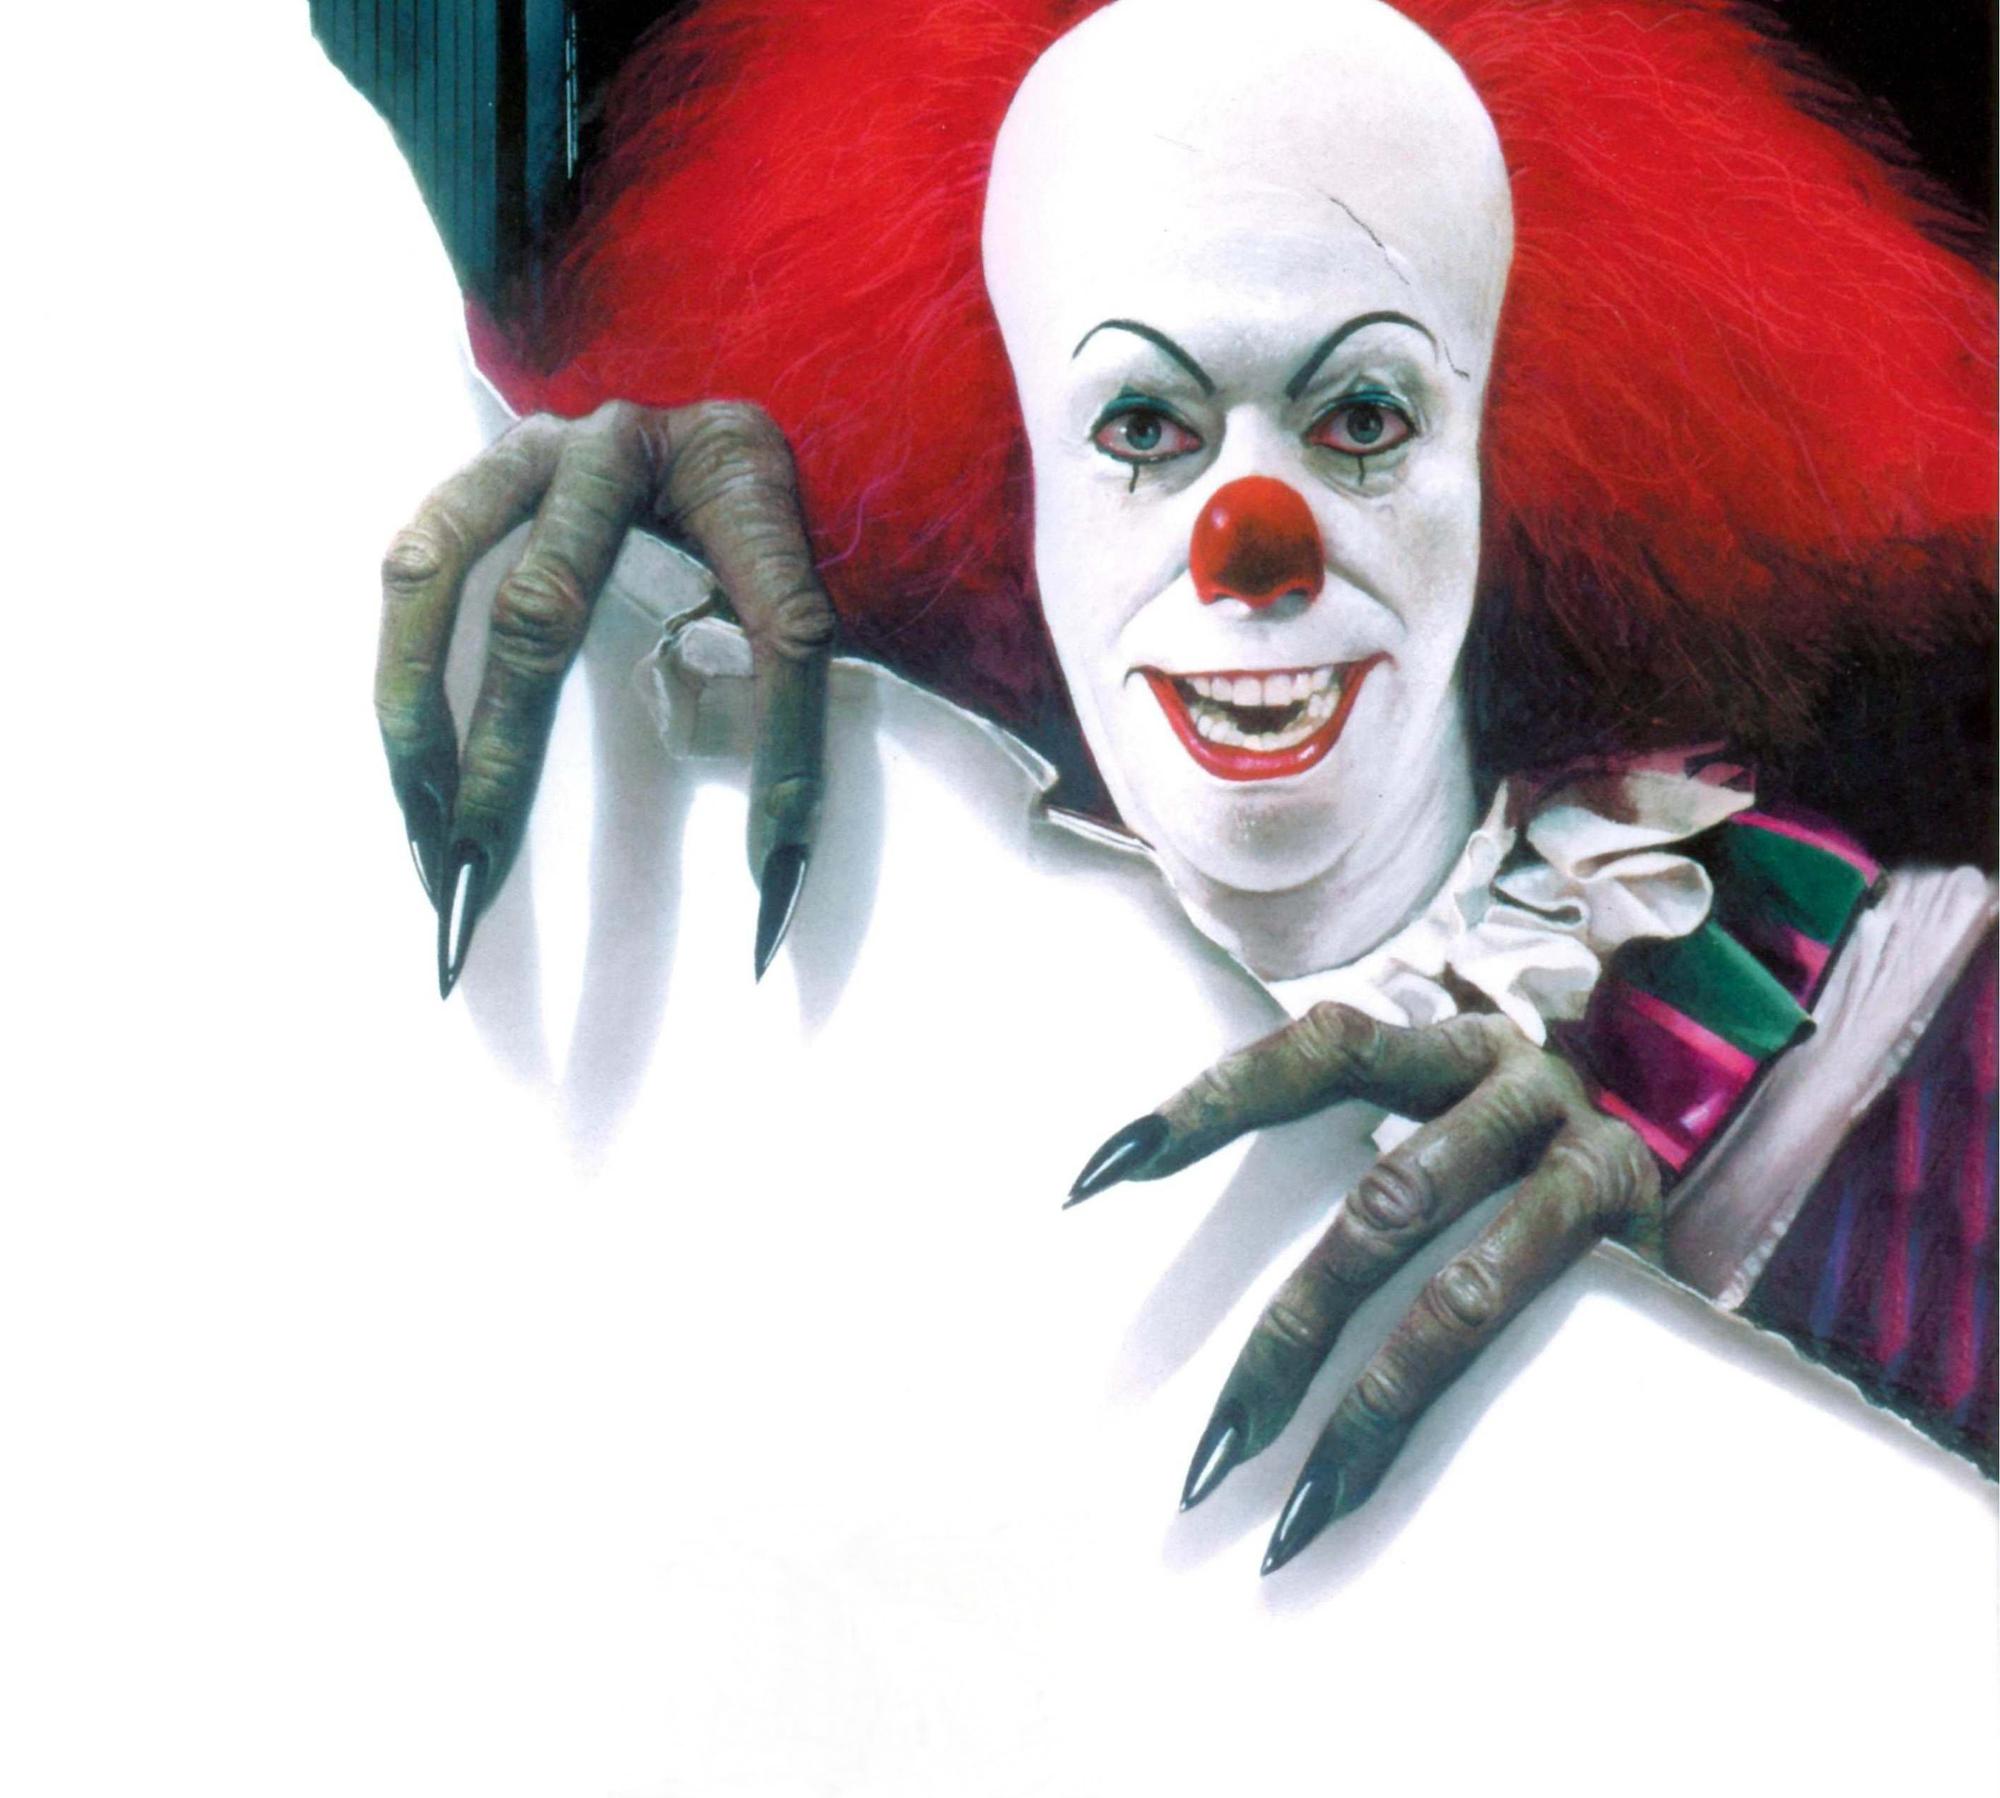 Le clown terrifiant imaginé par Stephen King dans "Ça" a pris vie à la télévision dans les années 90. [afp - Lorimar TV/WB TV / The Kobal Collection]